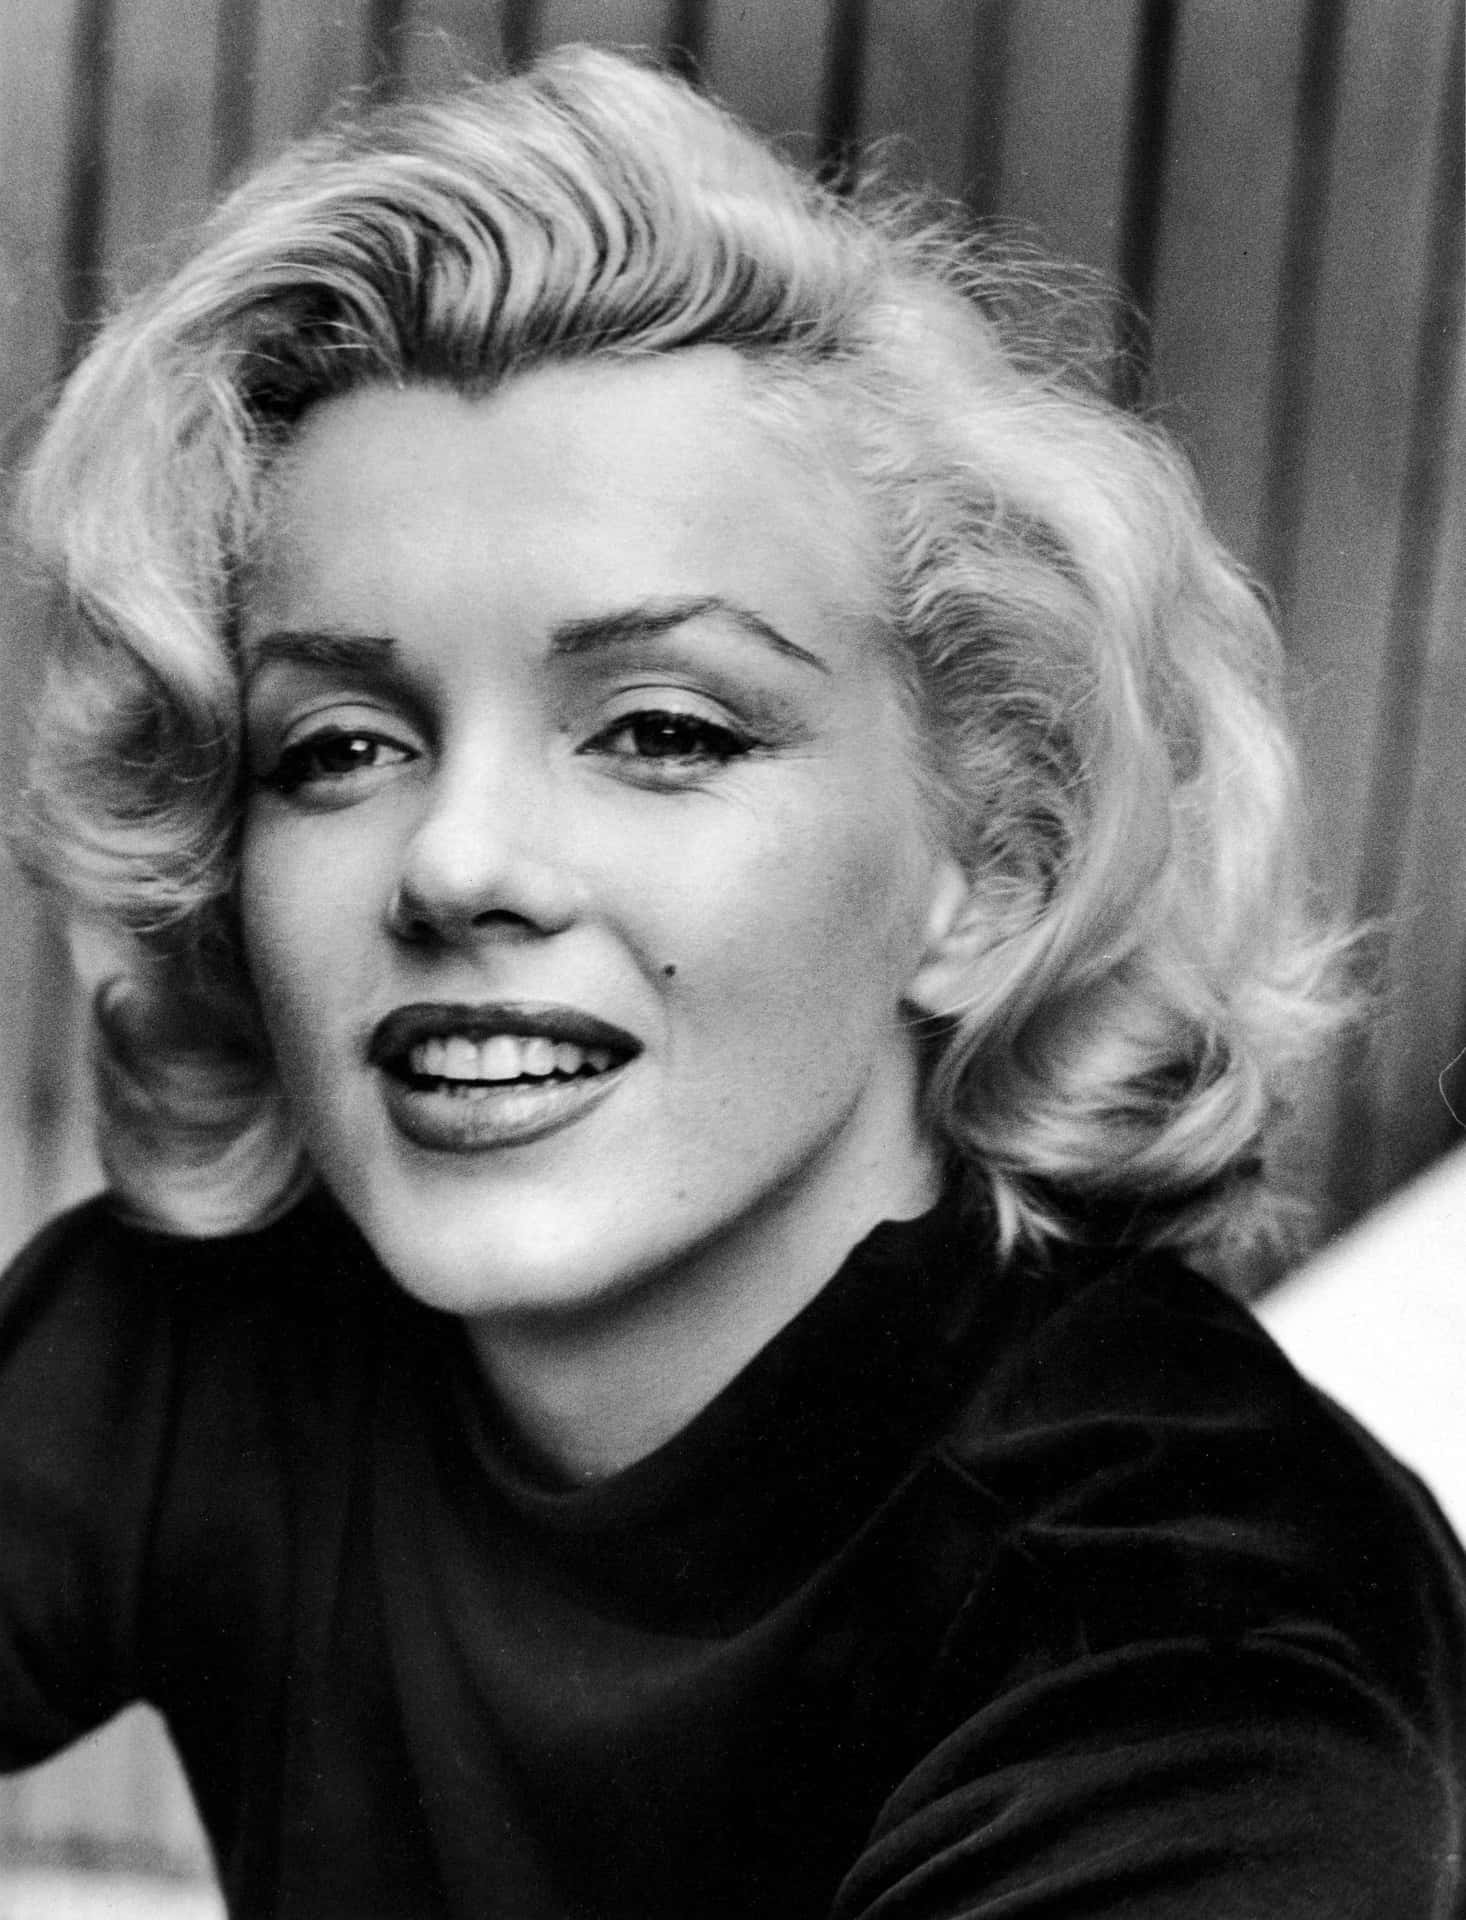 Dieikonische Hollywood-schauspielerin Marilyn Monroe Während Der Höhe Ihrer Karriere.